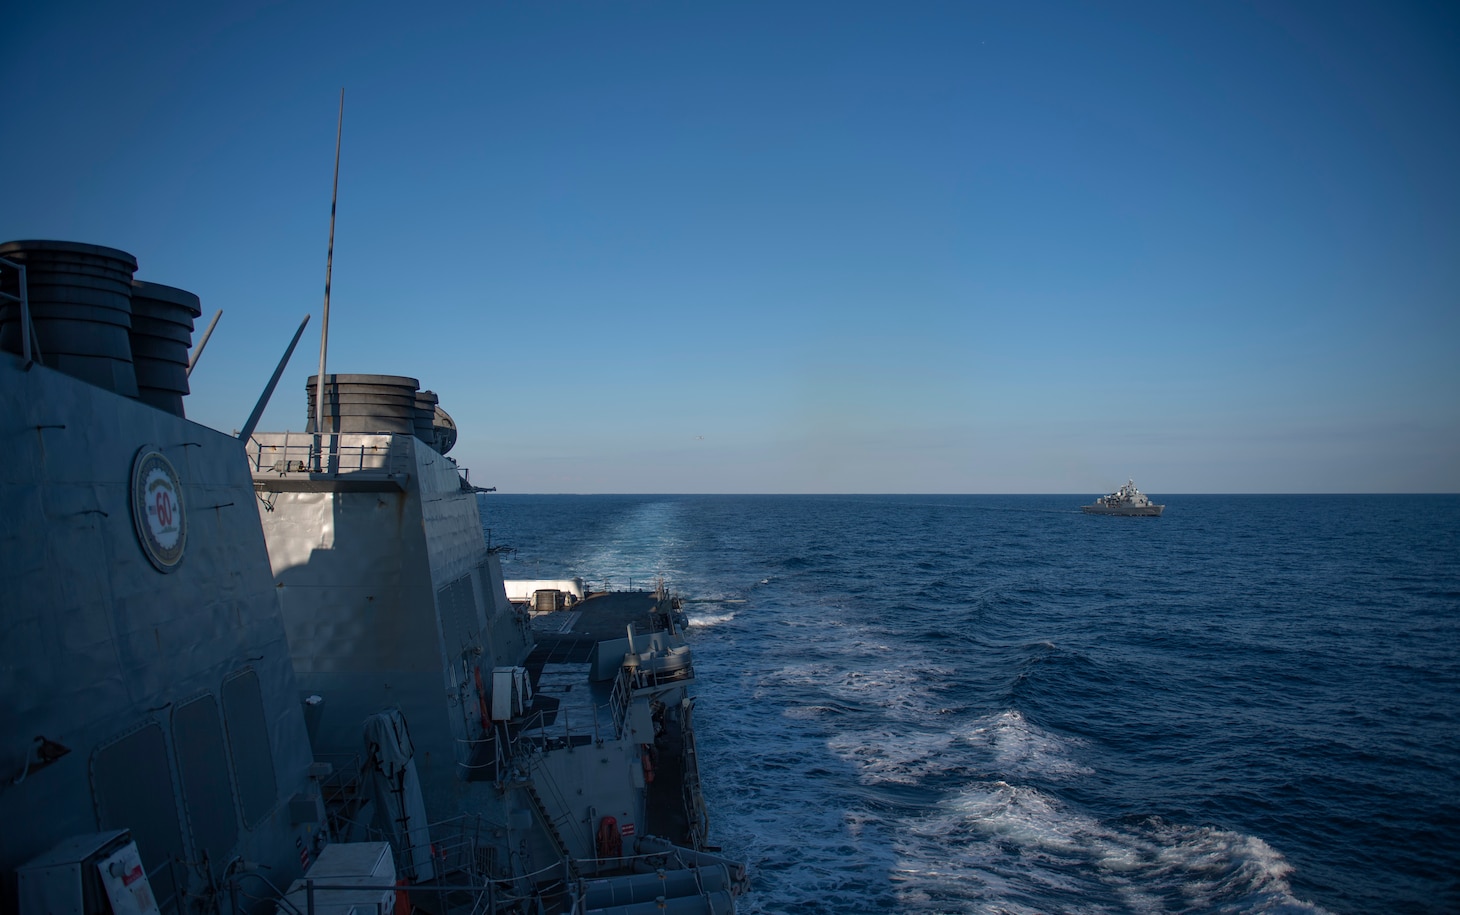 Black Sea; USS Roosevelt (DDG 80); TCG Barbaros (F 244)